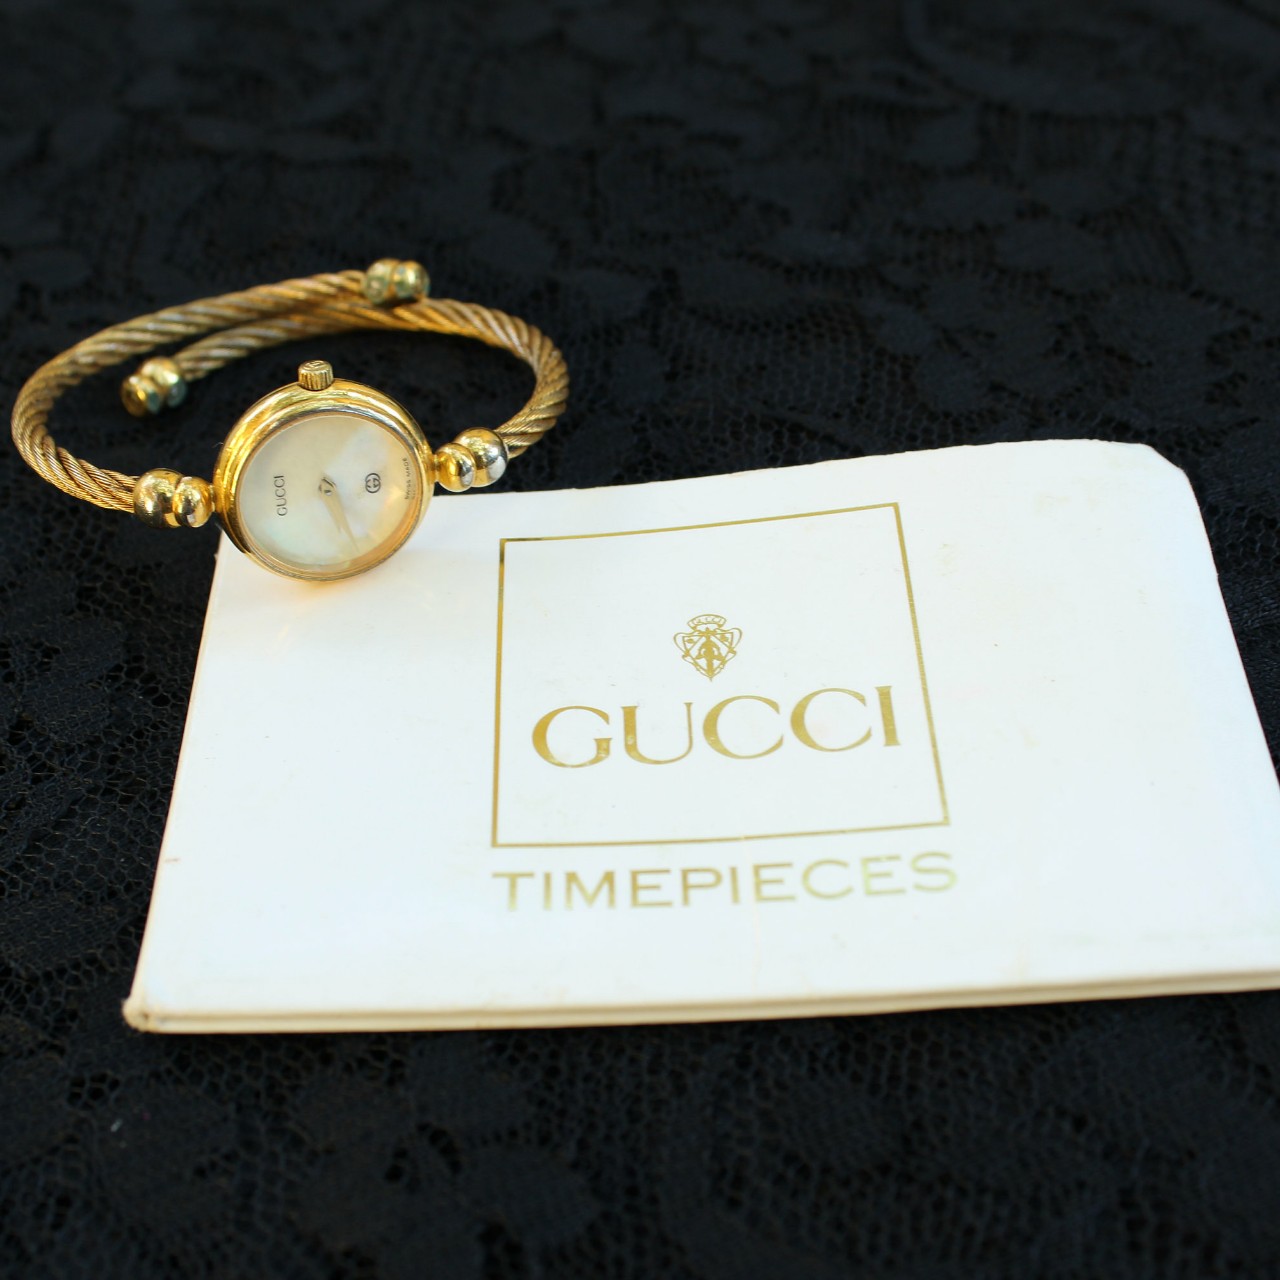 Đồng hồ Gucci nữ giá bao nhiêu? Có nên mua đồng hồ Gucci nữ không?